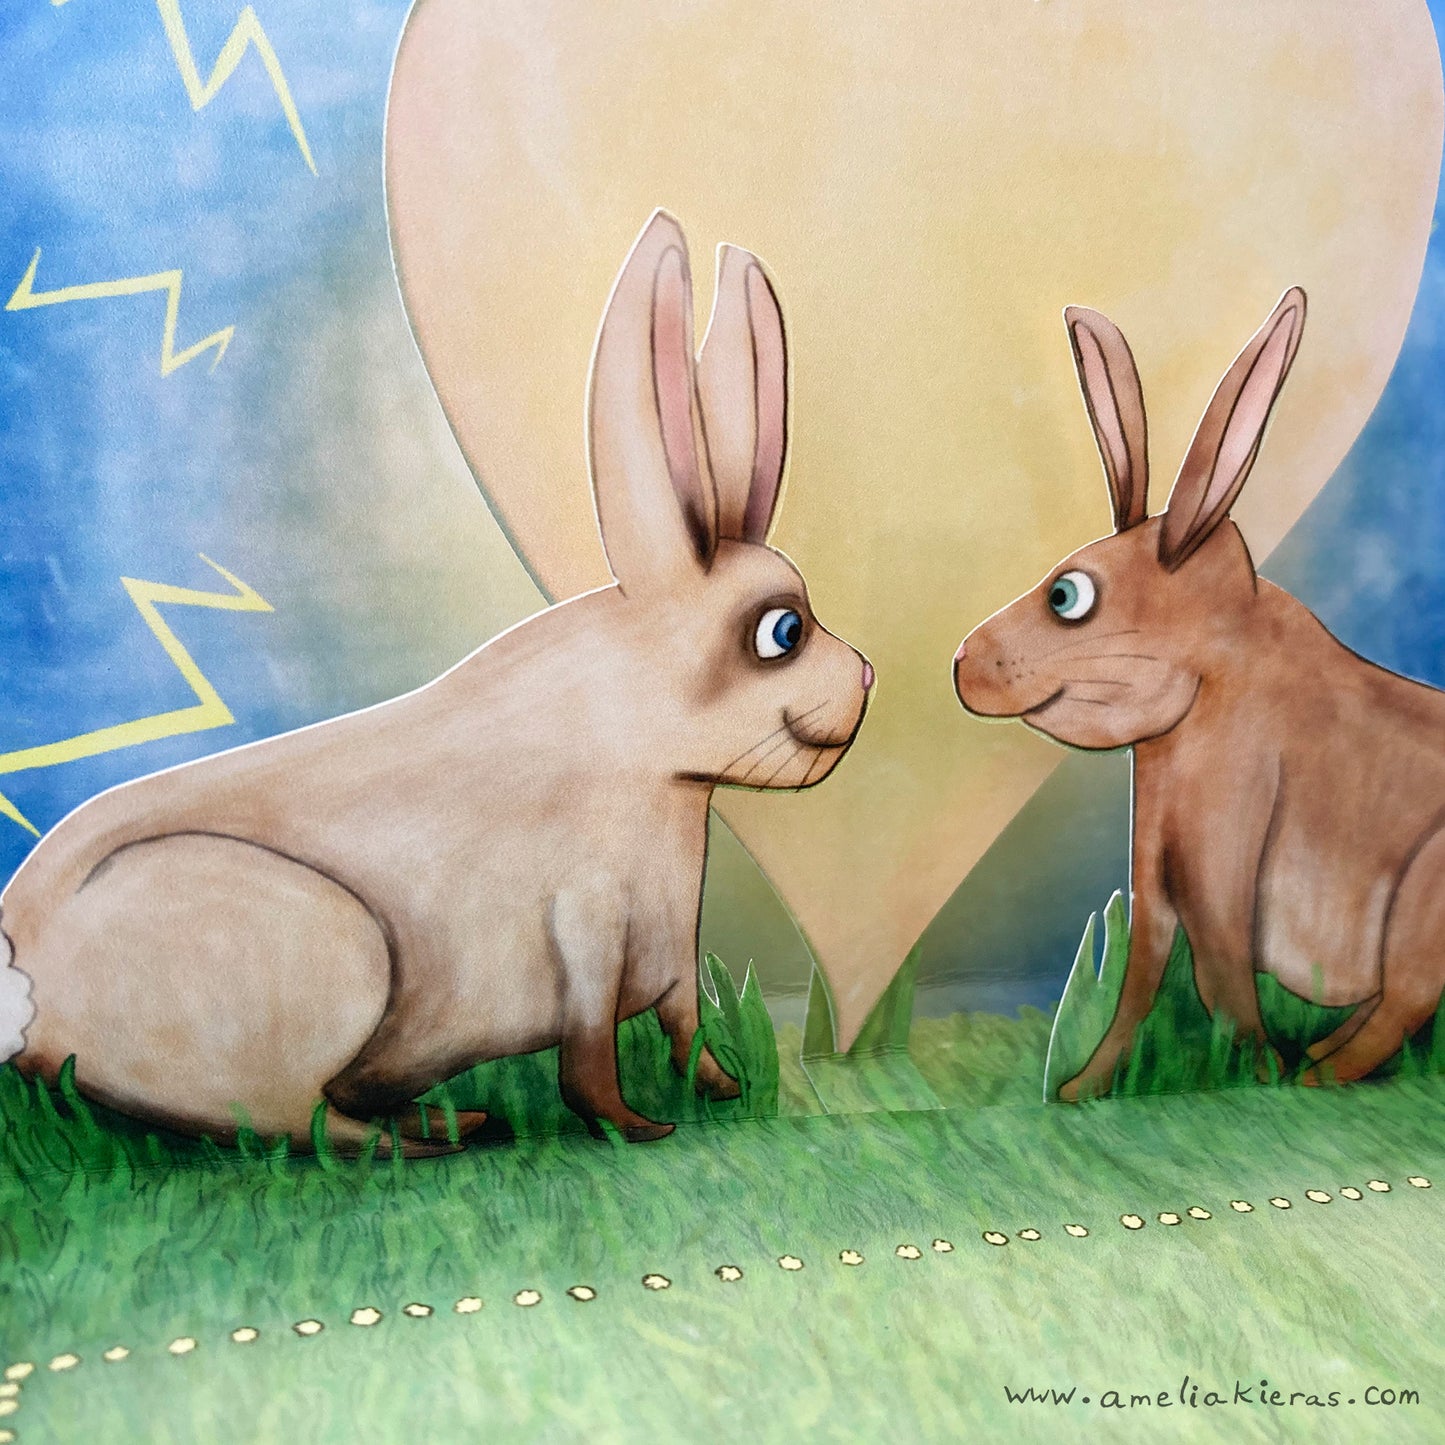 3D Pop Up Card - Rabbit Love